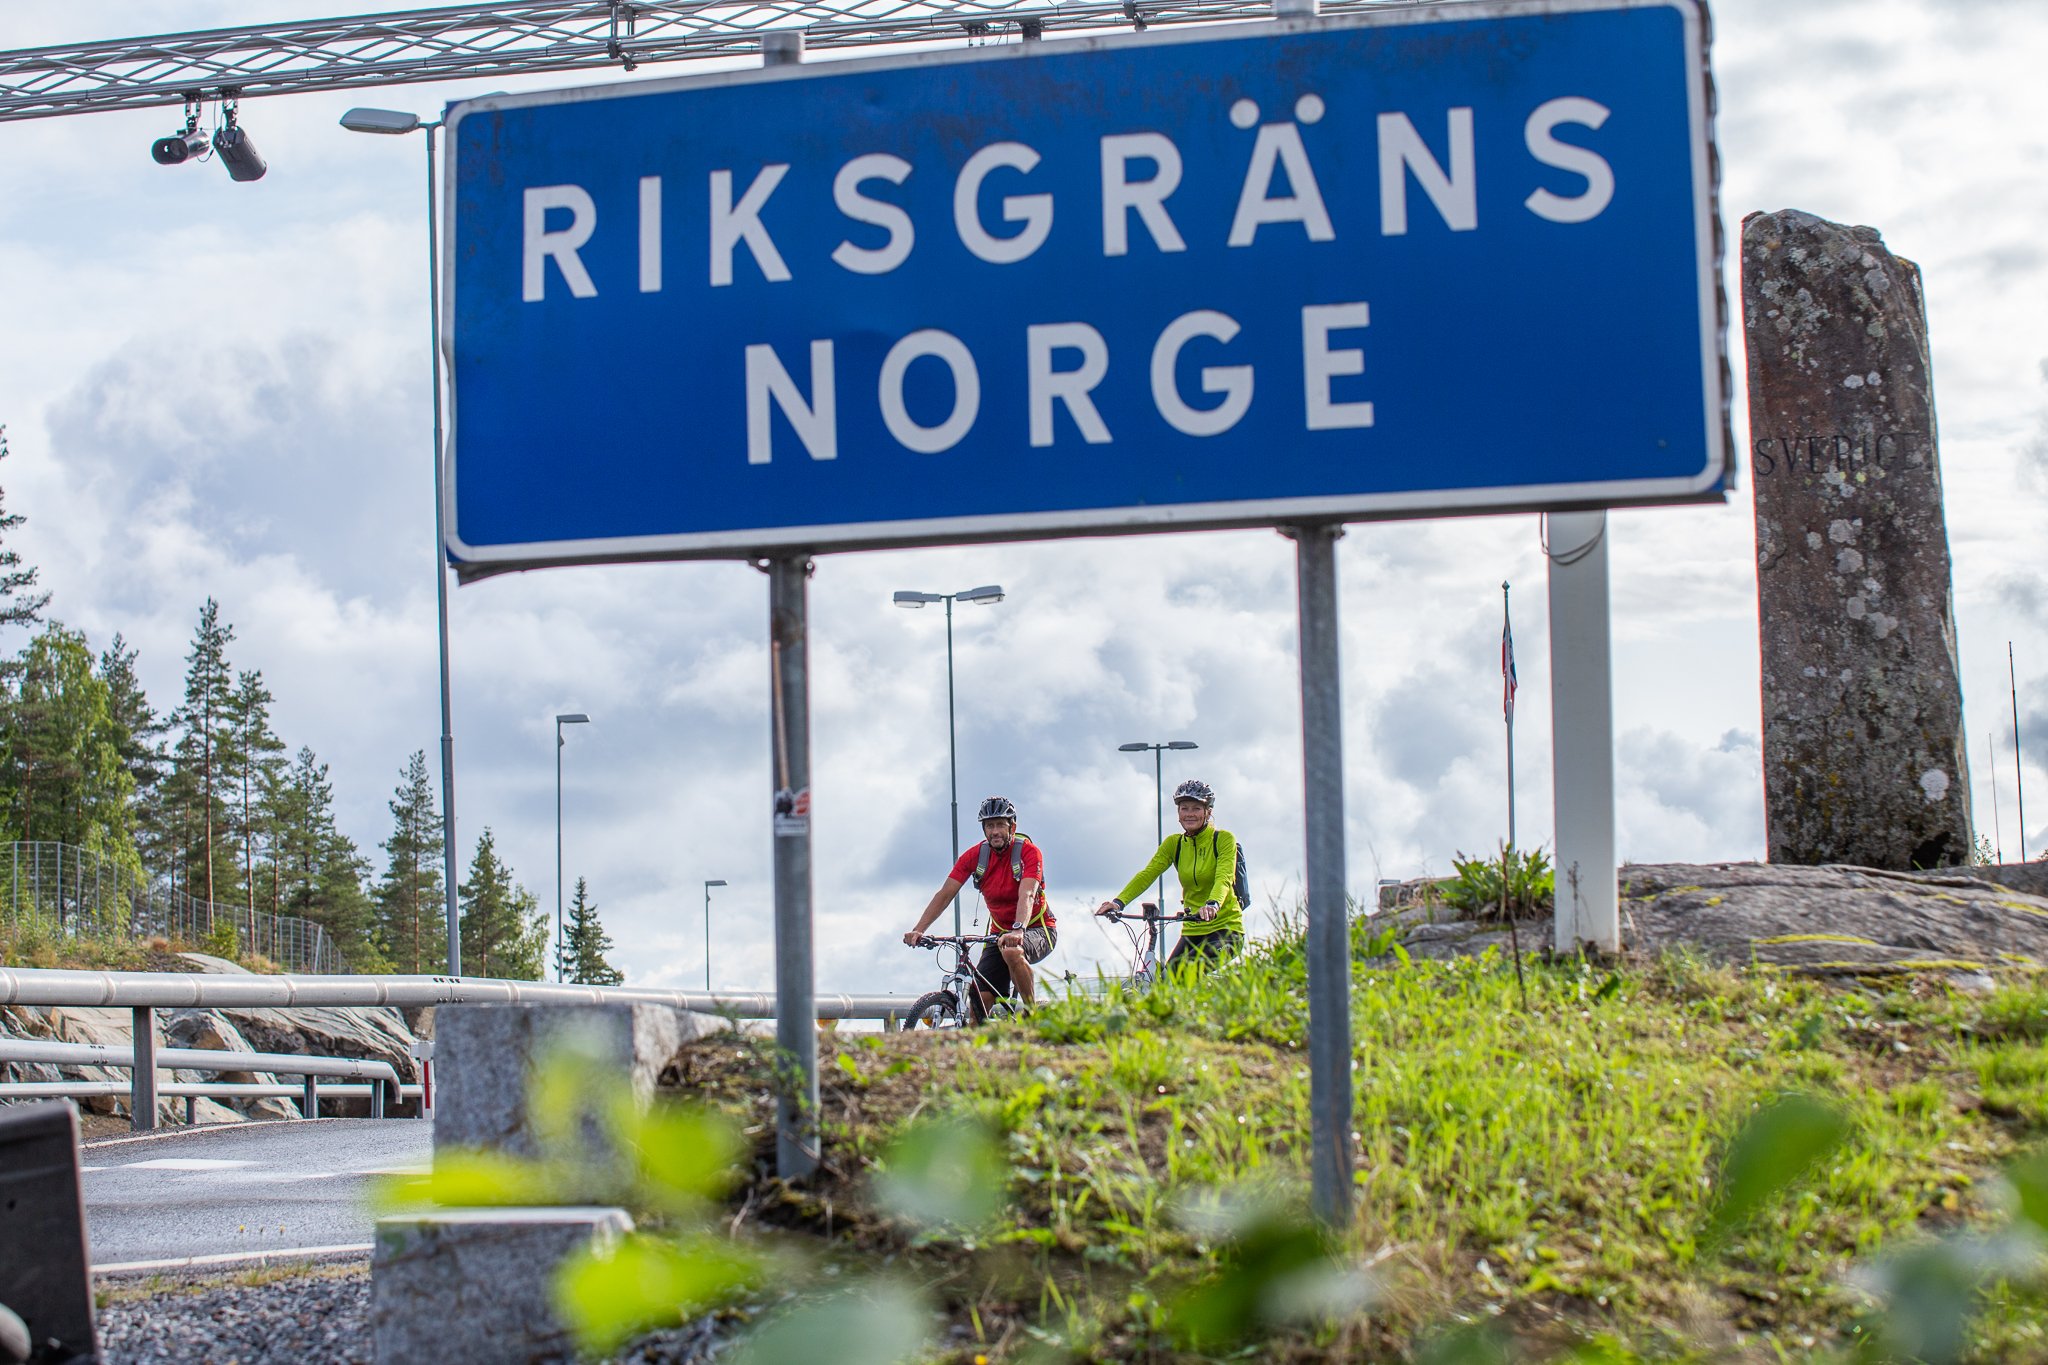 Riksgränsen Norge 